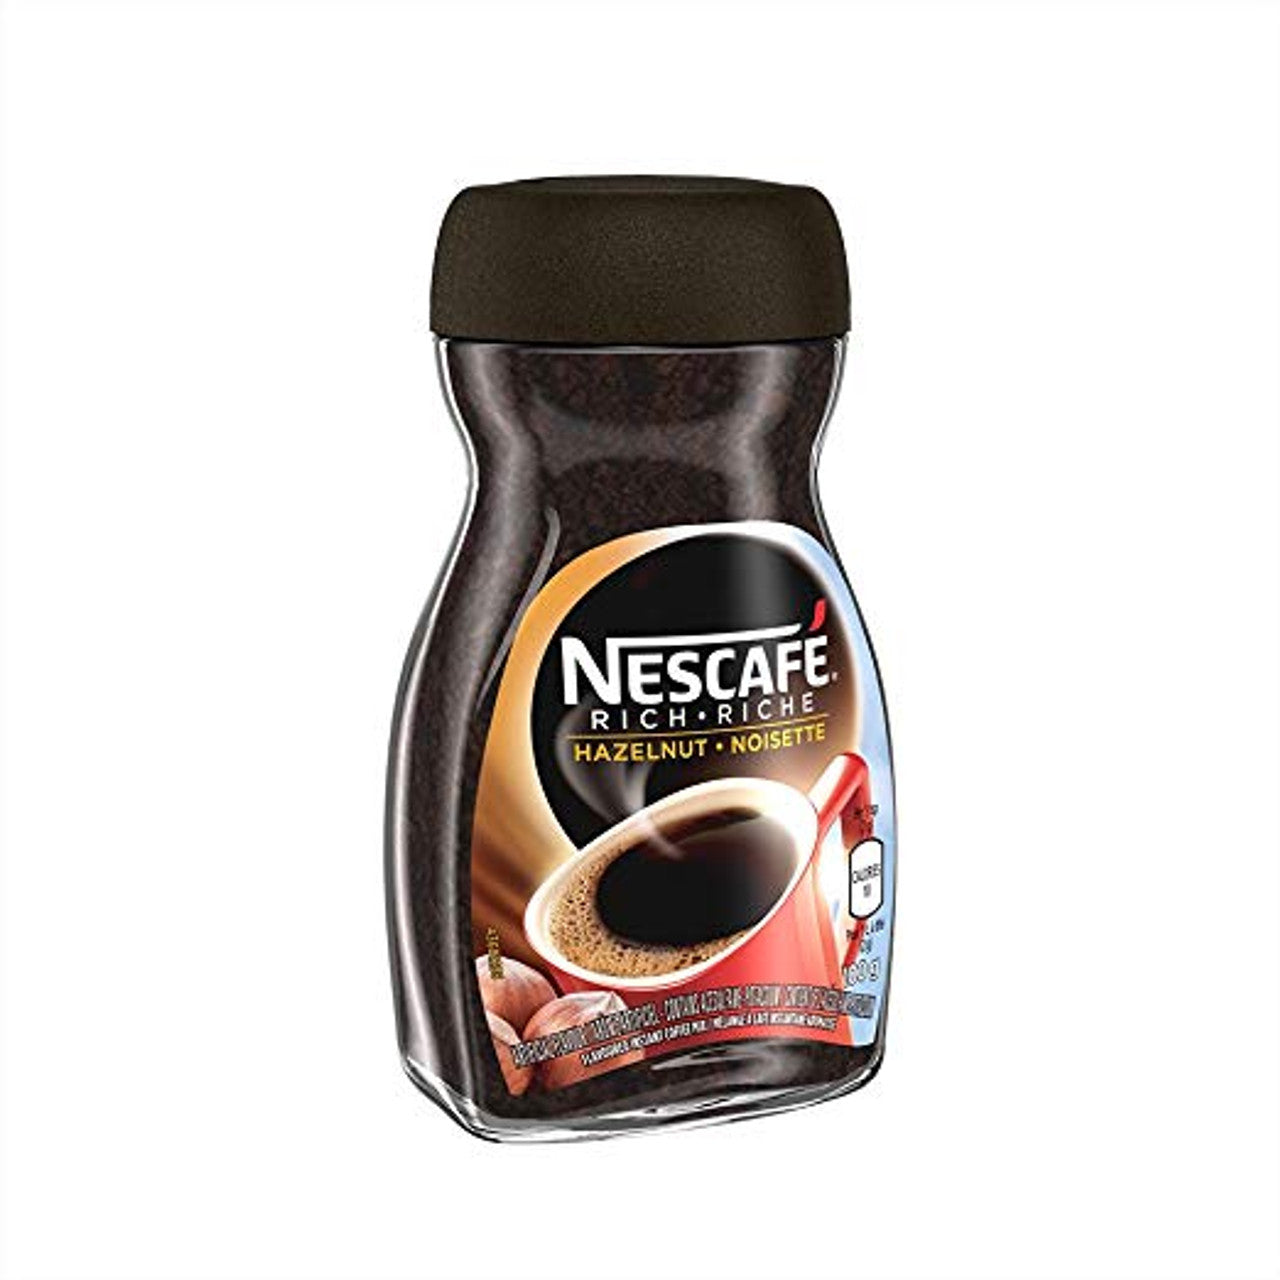 Nescafe Rich Hazelnut (100g)